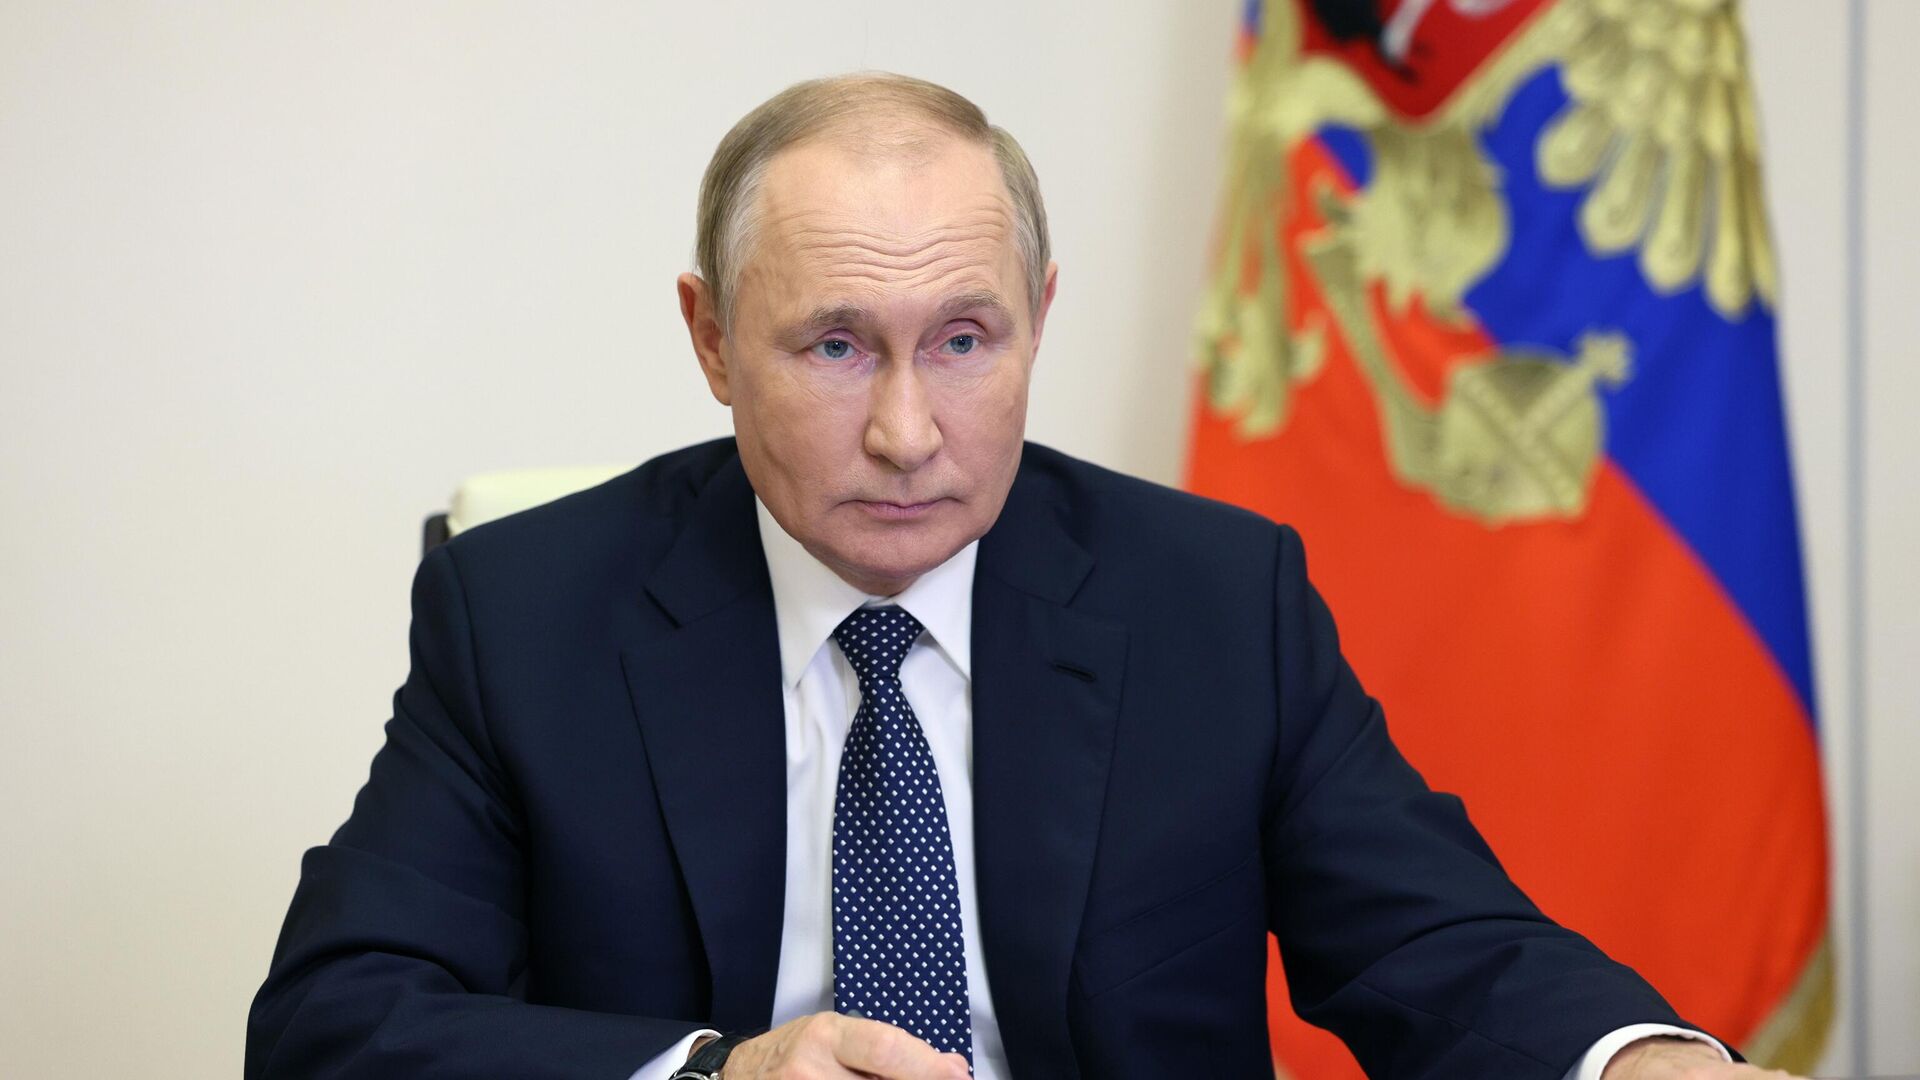 Путин: Россия делает все для создания системы равной и неделимой безопасности 